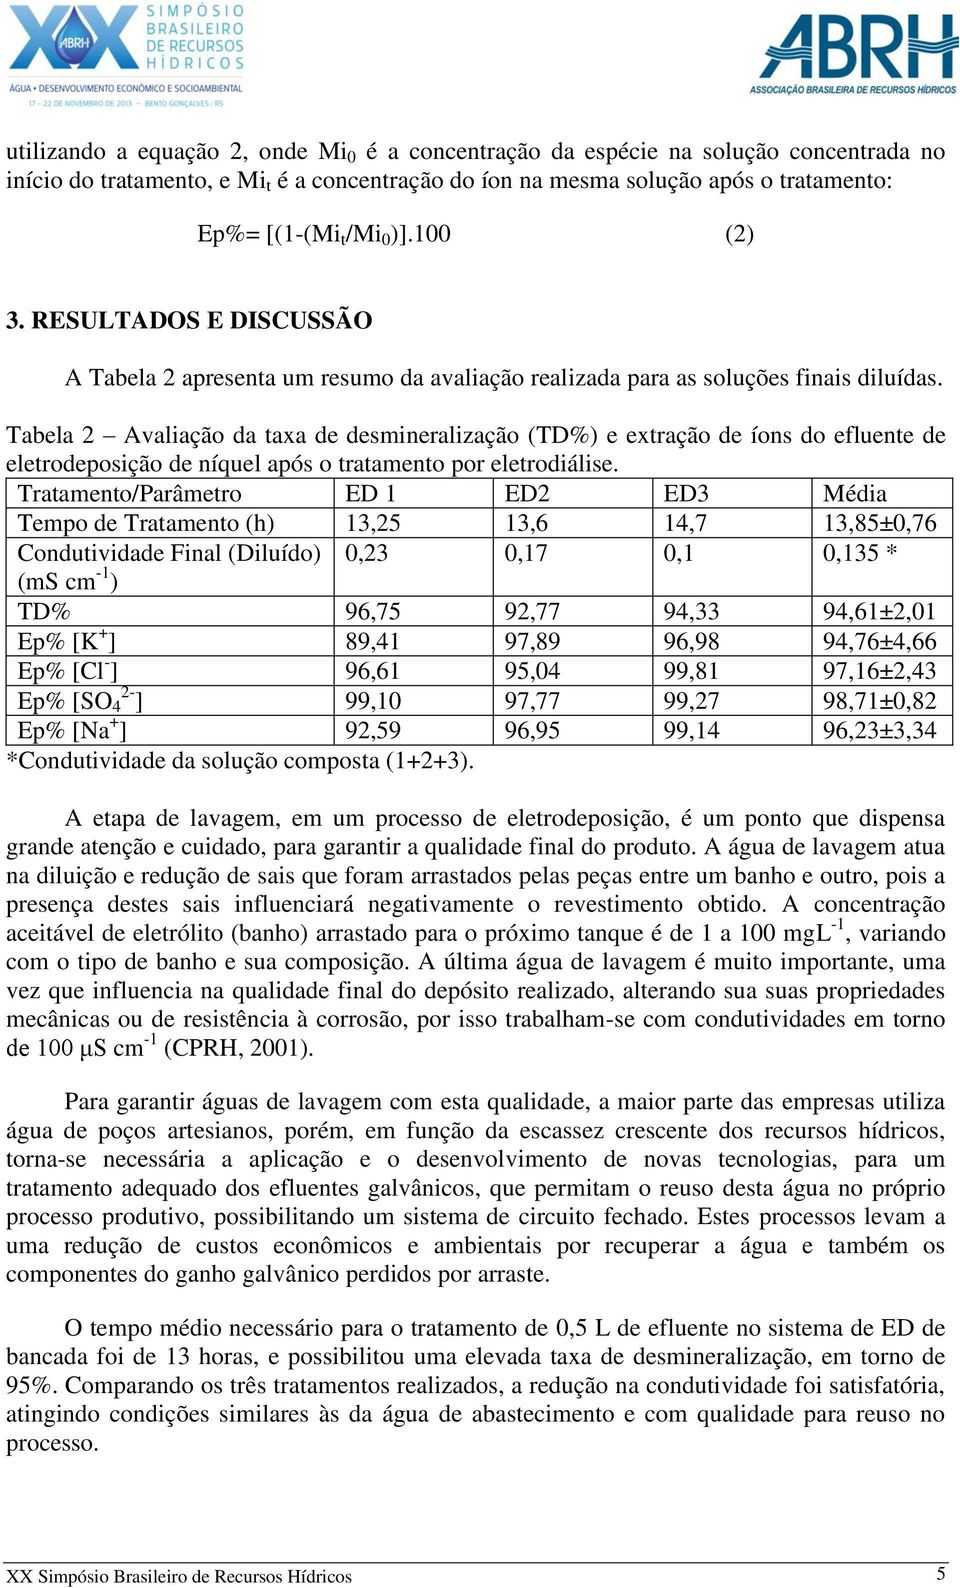 Tabela 2 Avaliação da taxa de desmineralização (TD%) e extração de íons do efluente de eletrodeposição de níquel após o tratamento por eletrodiálise.